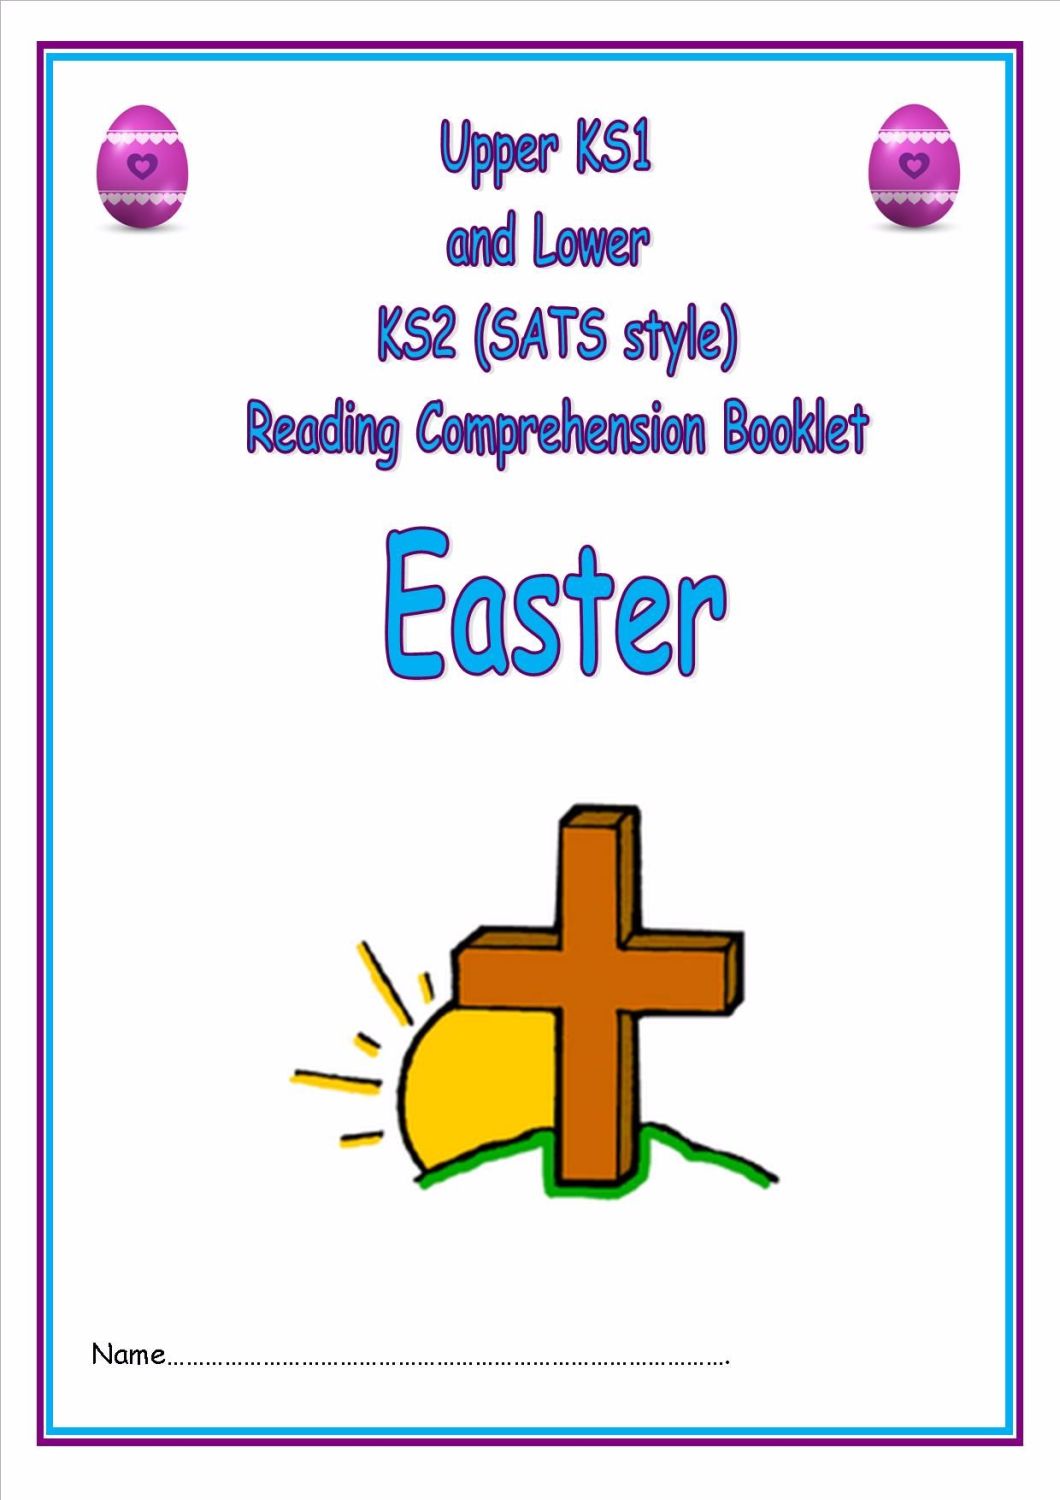 NEW! KS1/LKS2 SATs style reading comprehension booklet based on Easter.  De